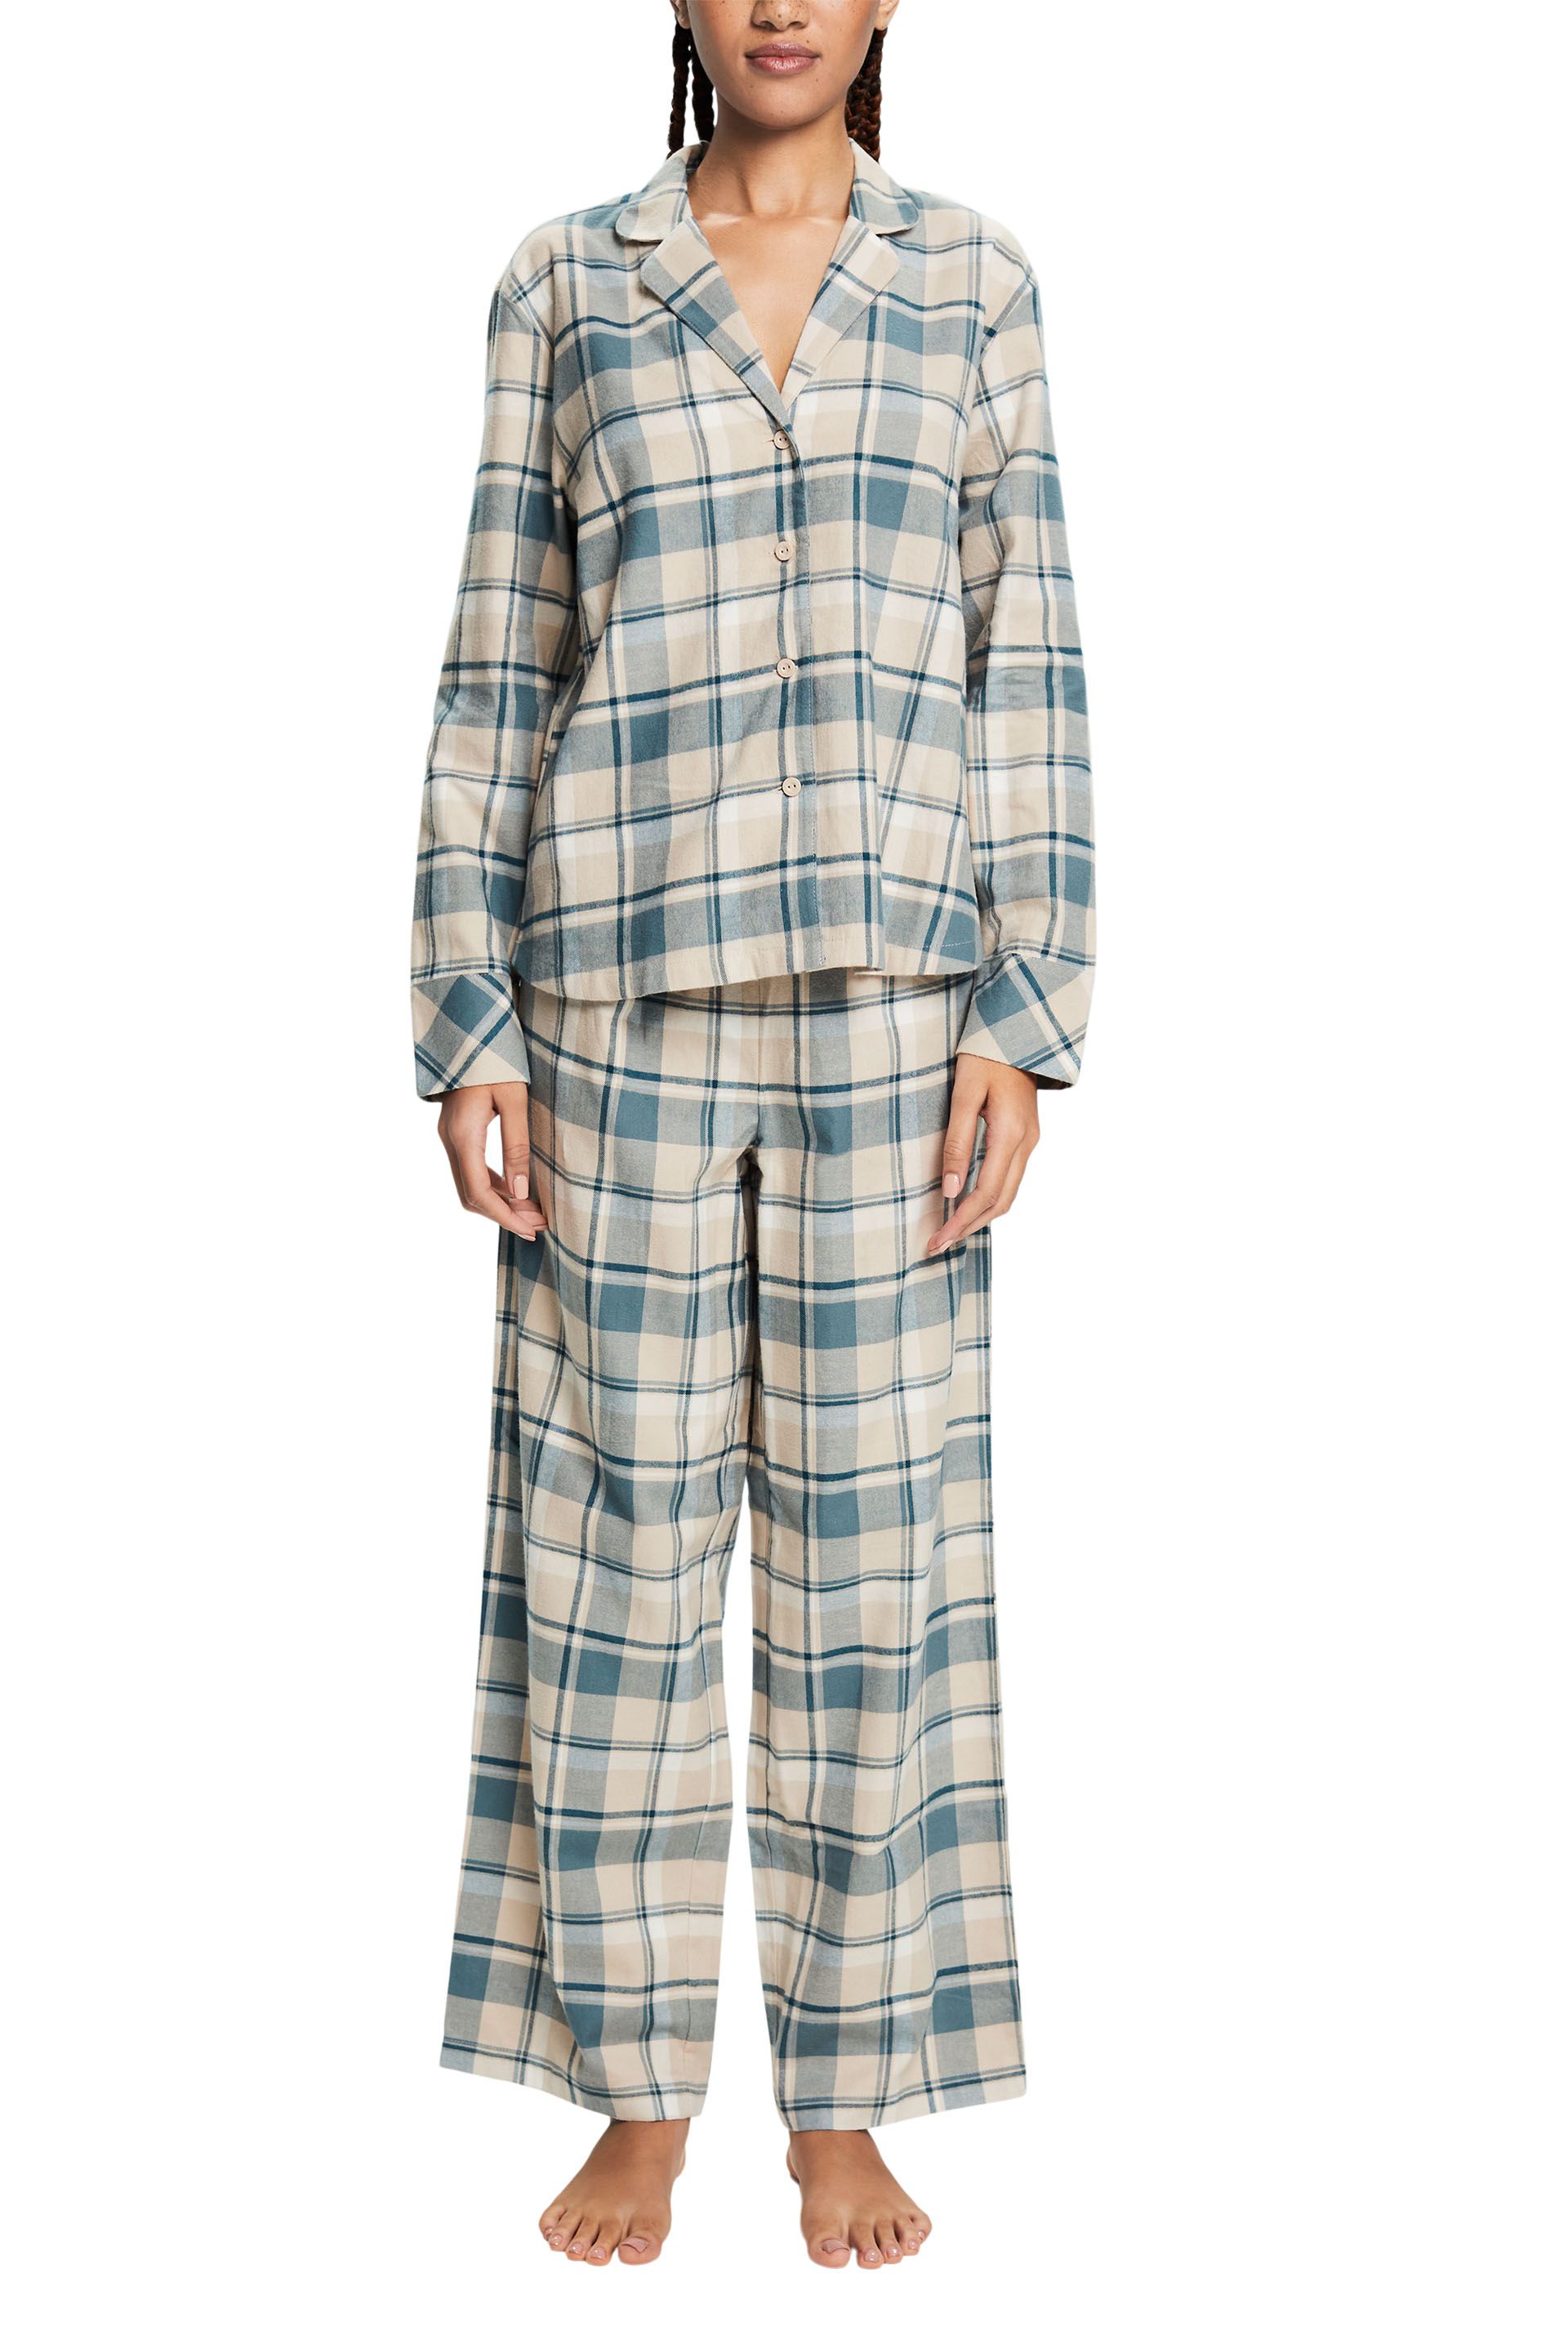 Damen-Pyjama aus kariertem Baumwoll-Flanell